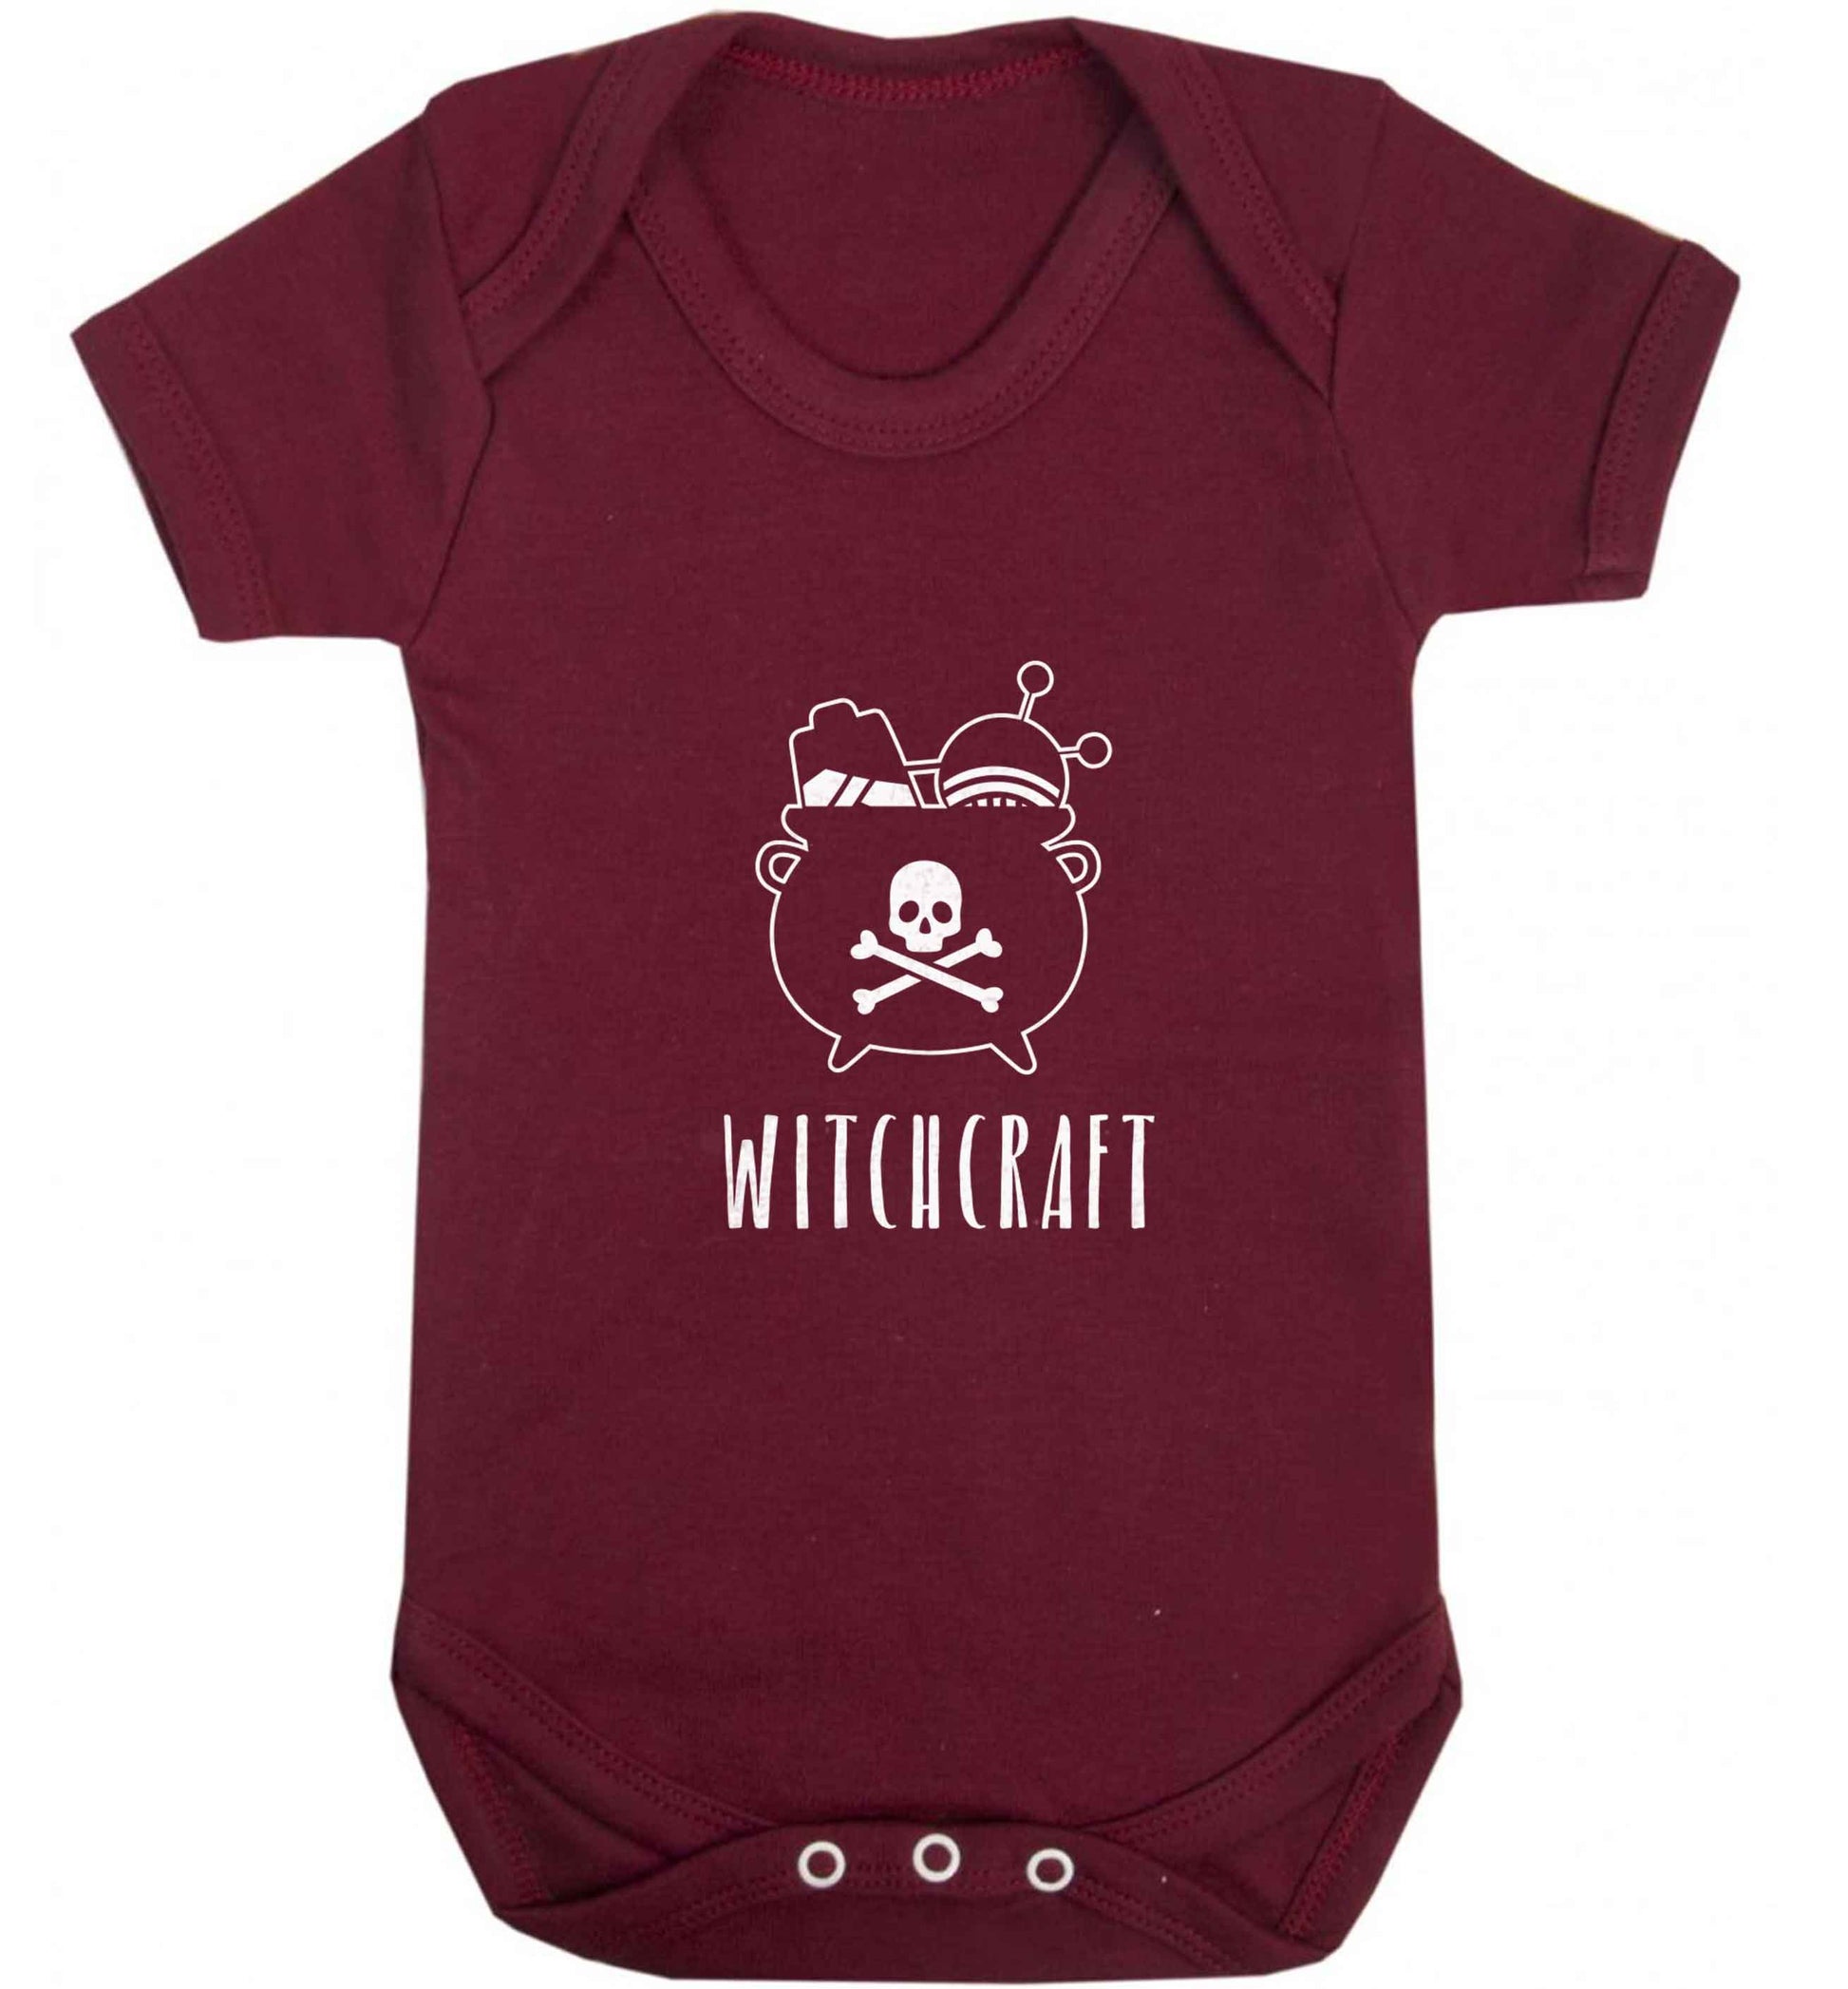 Witchcraft baby vest maroon 18-24 months